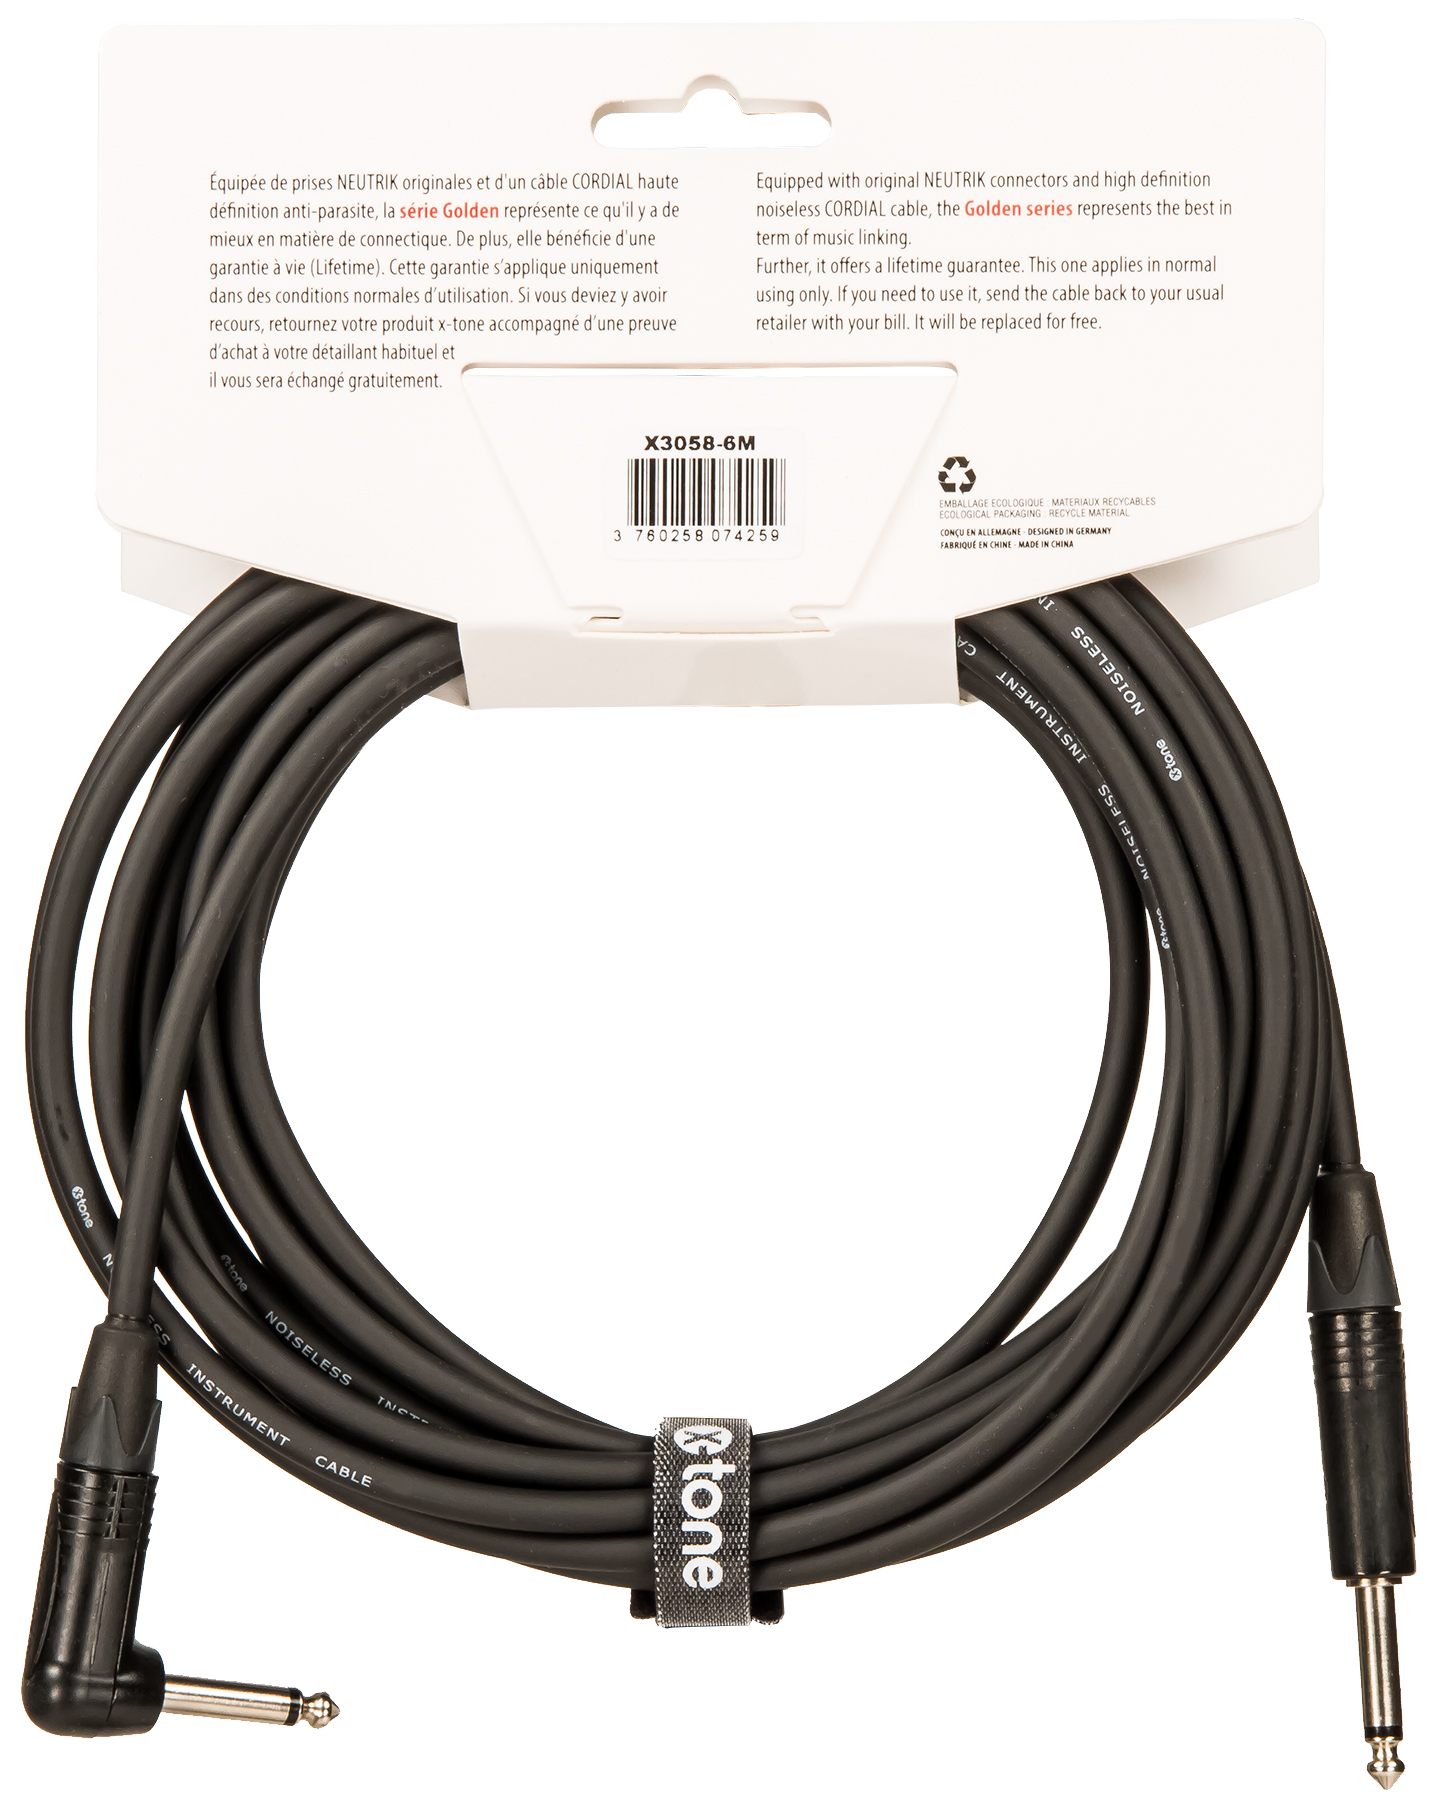 X-tone X3058-6m Instrument Cable Golden Series Neutrik Droit/coude 6m - Kabel - Variation 2